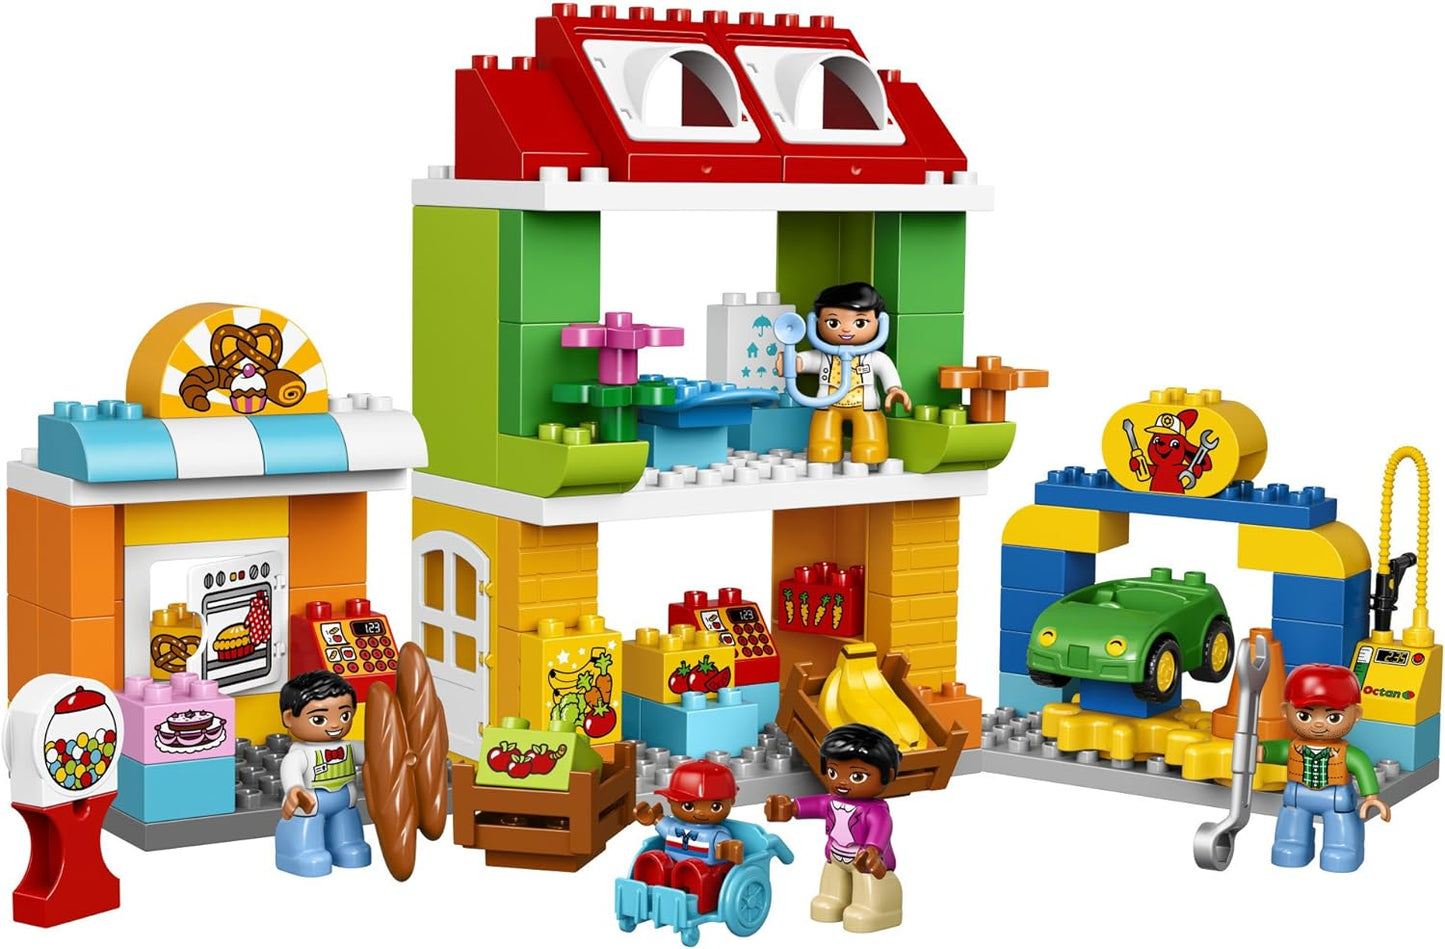 LEGO DUPLO Town 6174421 Square 10836, Multi